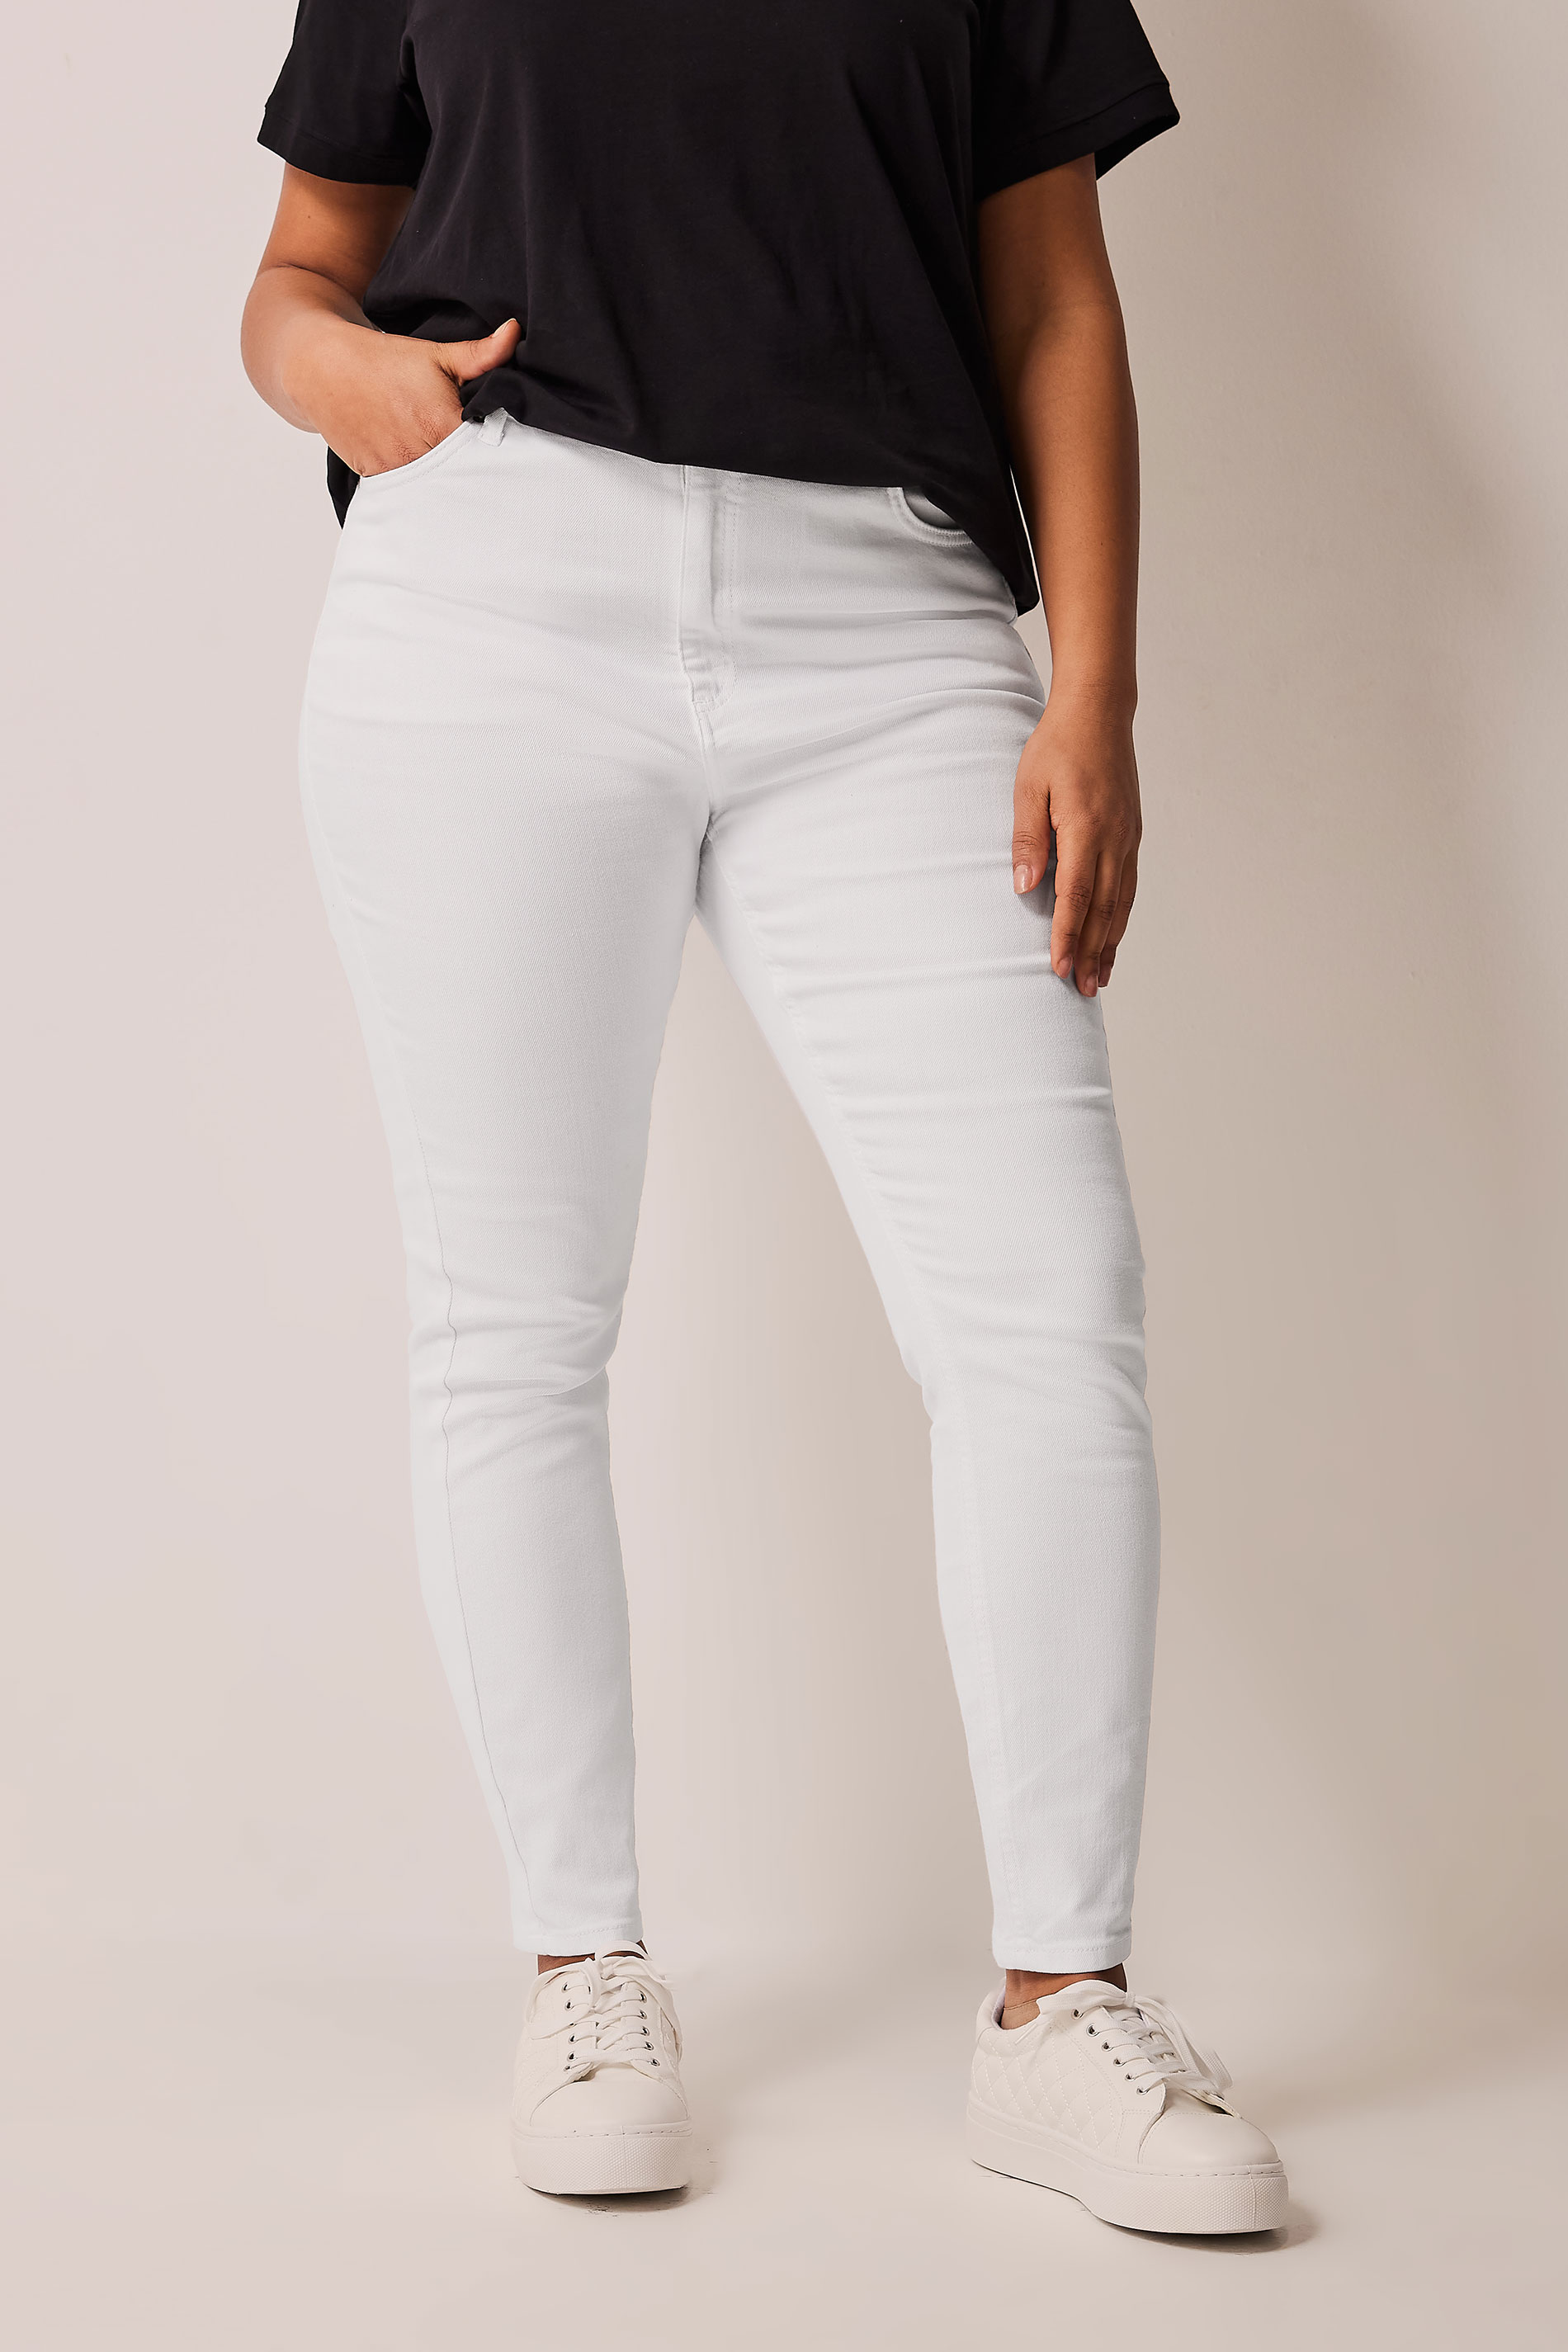 EVANS Plus Size White Shaper Contour Jeans | Evans 1